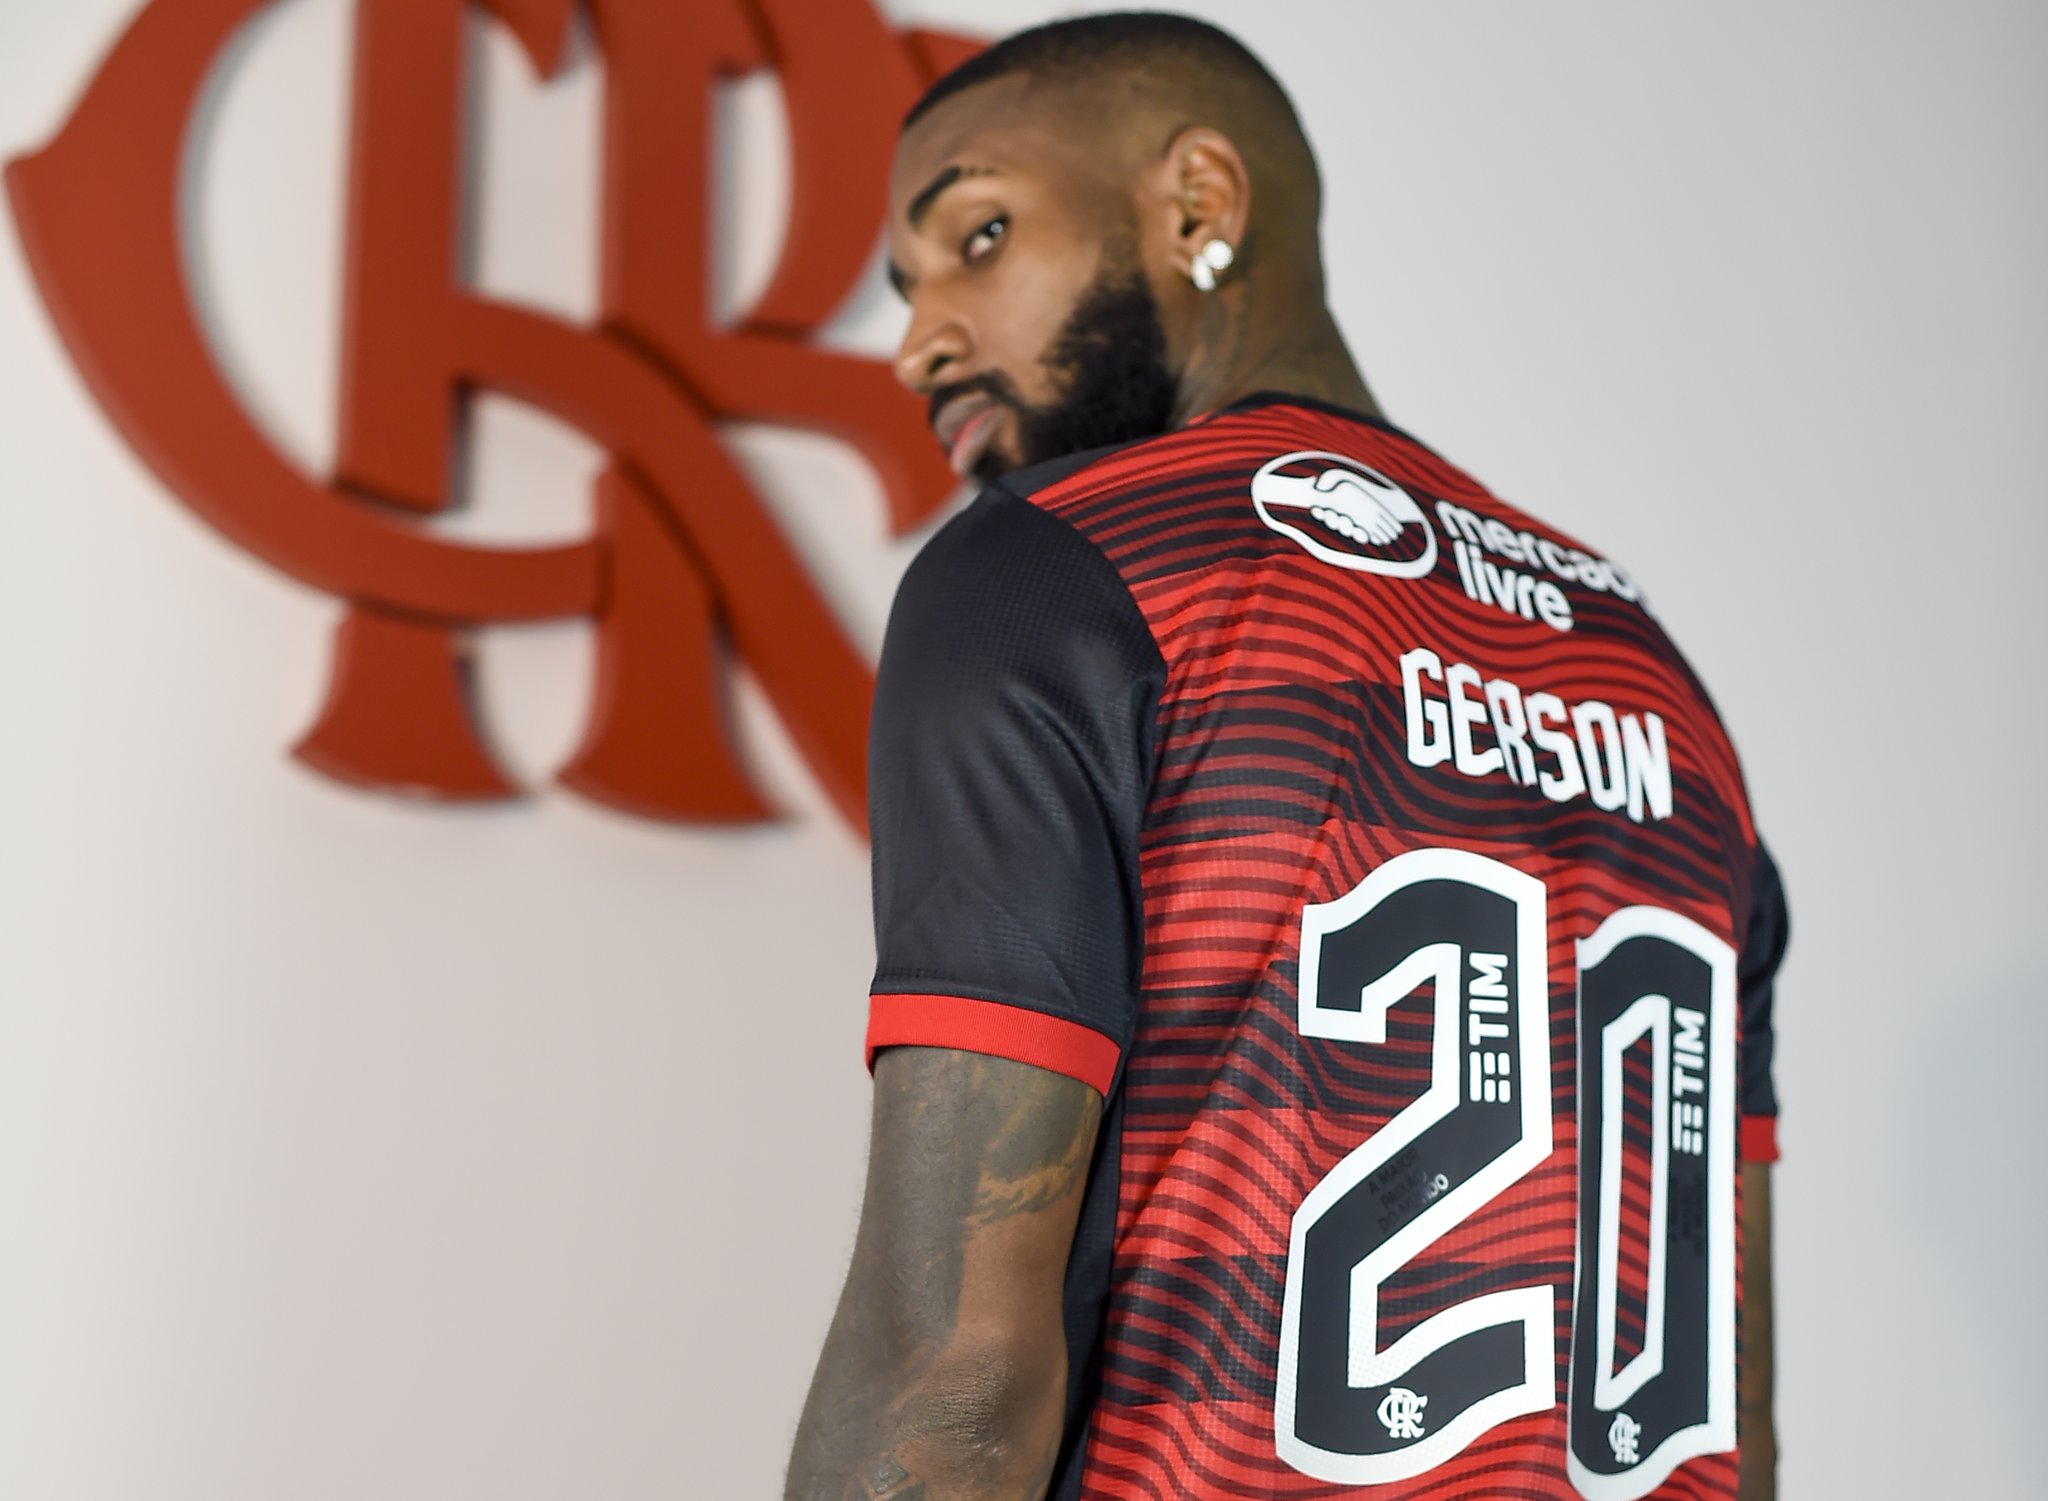 Conselho Deliberativo do Flamengo aprova contratos de dois patrocínios